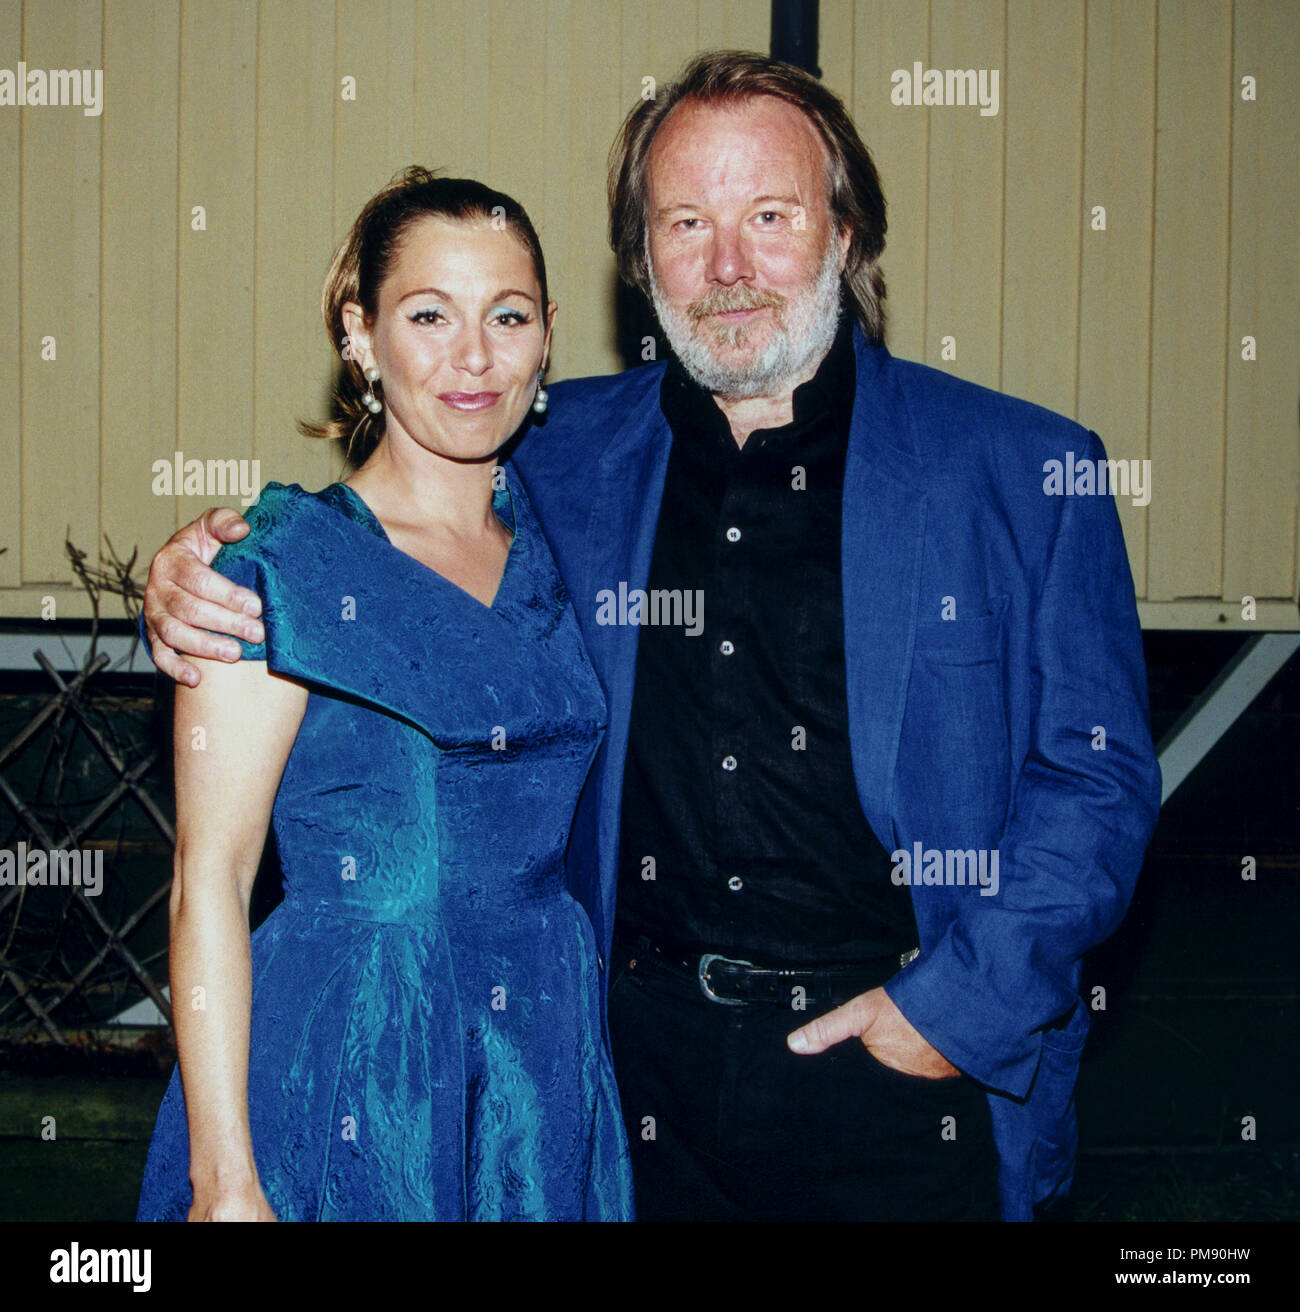 BENNY ANDERSSON compositeur et membre d'ABBA, sur photo avec Helen Sjöholm après un concert avec BAO Benny Andersson orchestra 2005 Banque D'Images